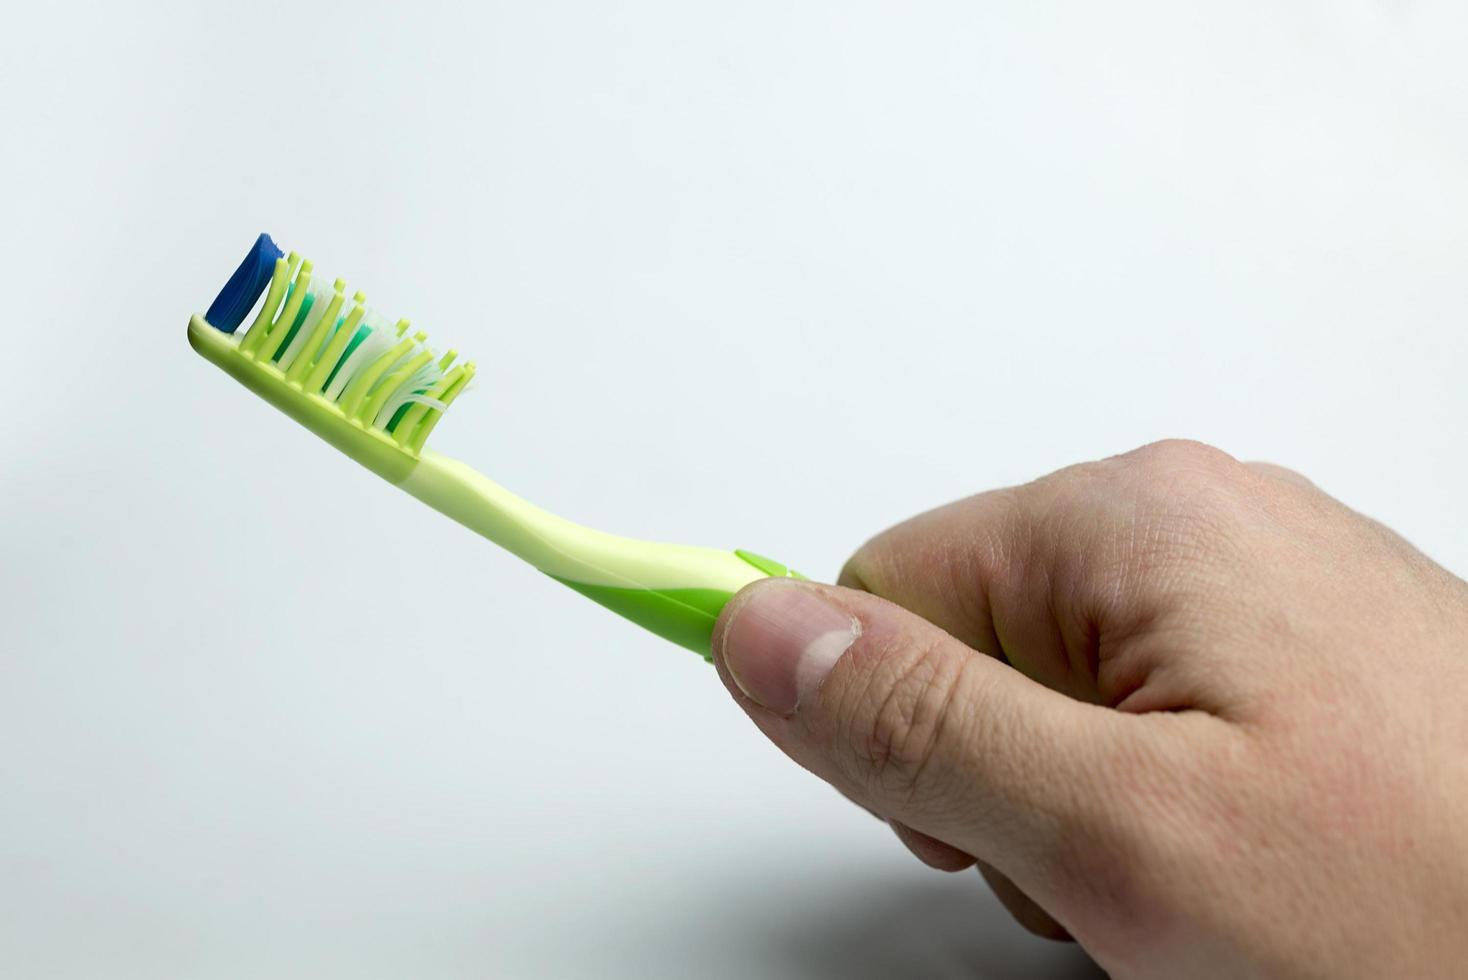 mano sosteniendo un cepillo de dientes. foto